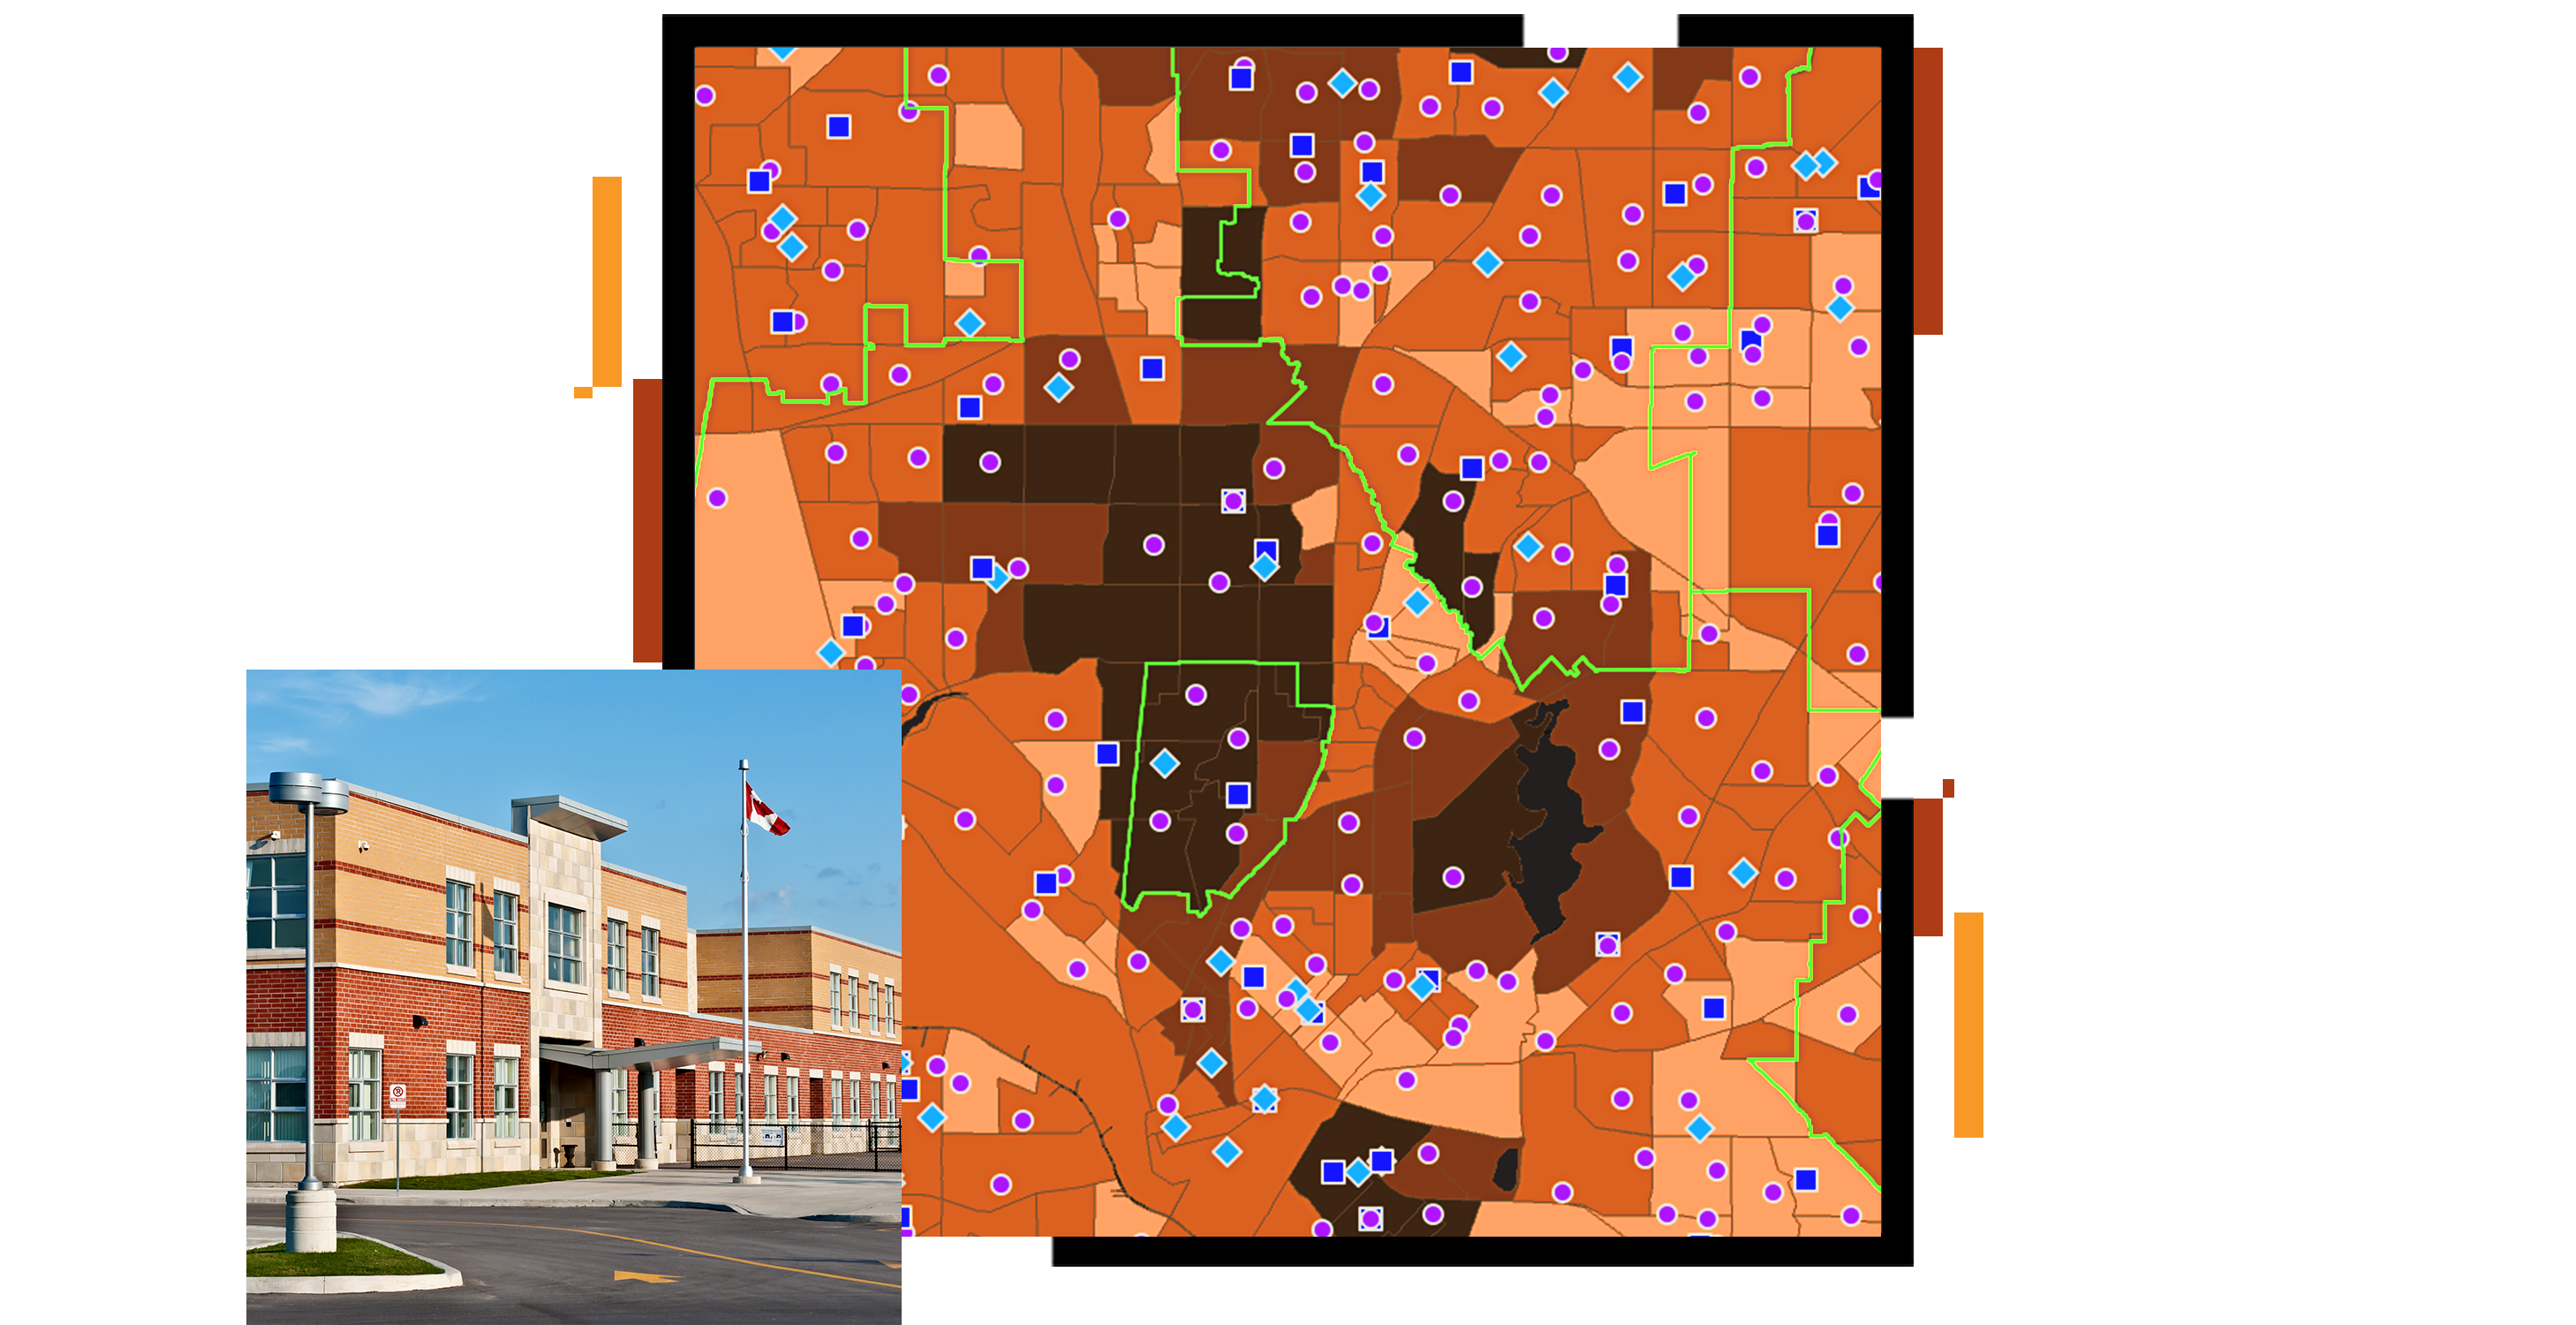 Mapa okręgu szkolnego w kolorach pomarańczowym i brązowym z rozmieszczonymi na niej fioletowymi i niebieskimi punktami oraz małe zdjęcie nowoczesnej szkoły średniej w kolorach pomarańczowym i beżowym na tle bezchmurnego niebieskiego nieba